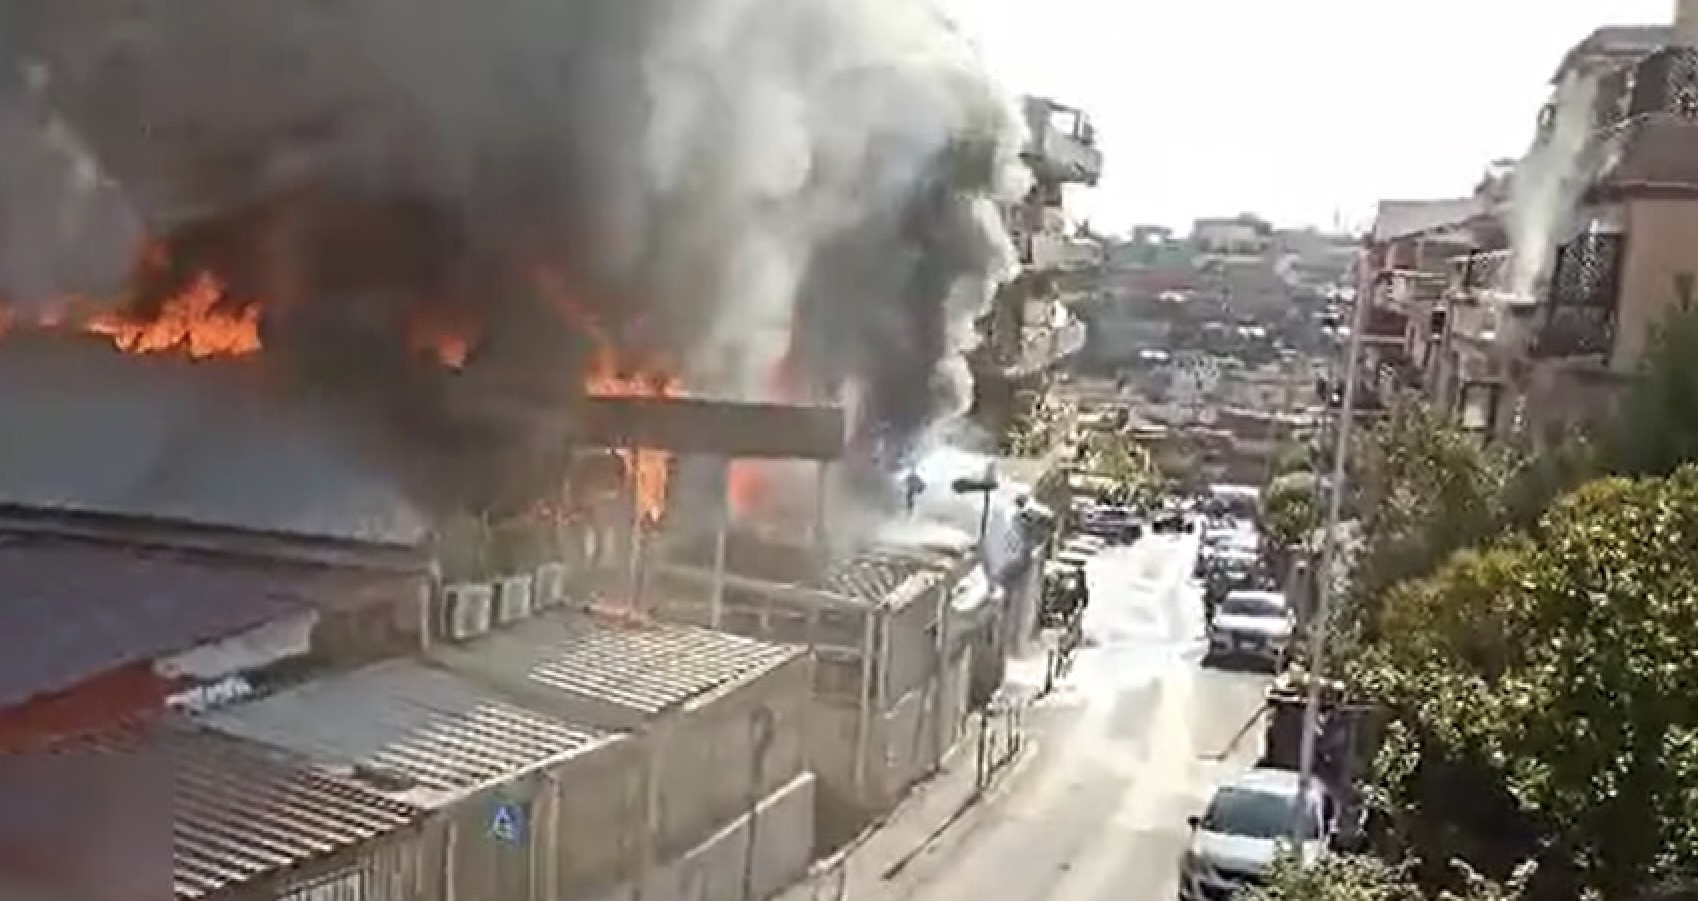 Roma, in fiamme un capannone e più attività: colonna di fumo e palazzi a rischio (VIDEO) 1